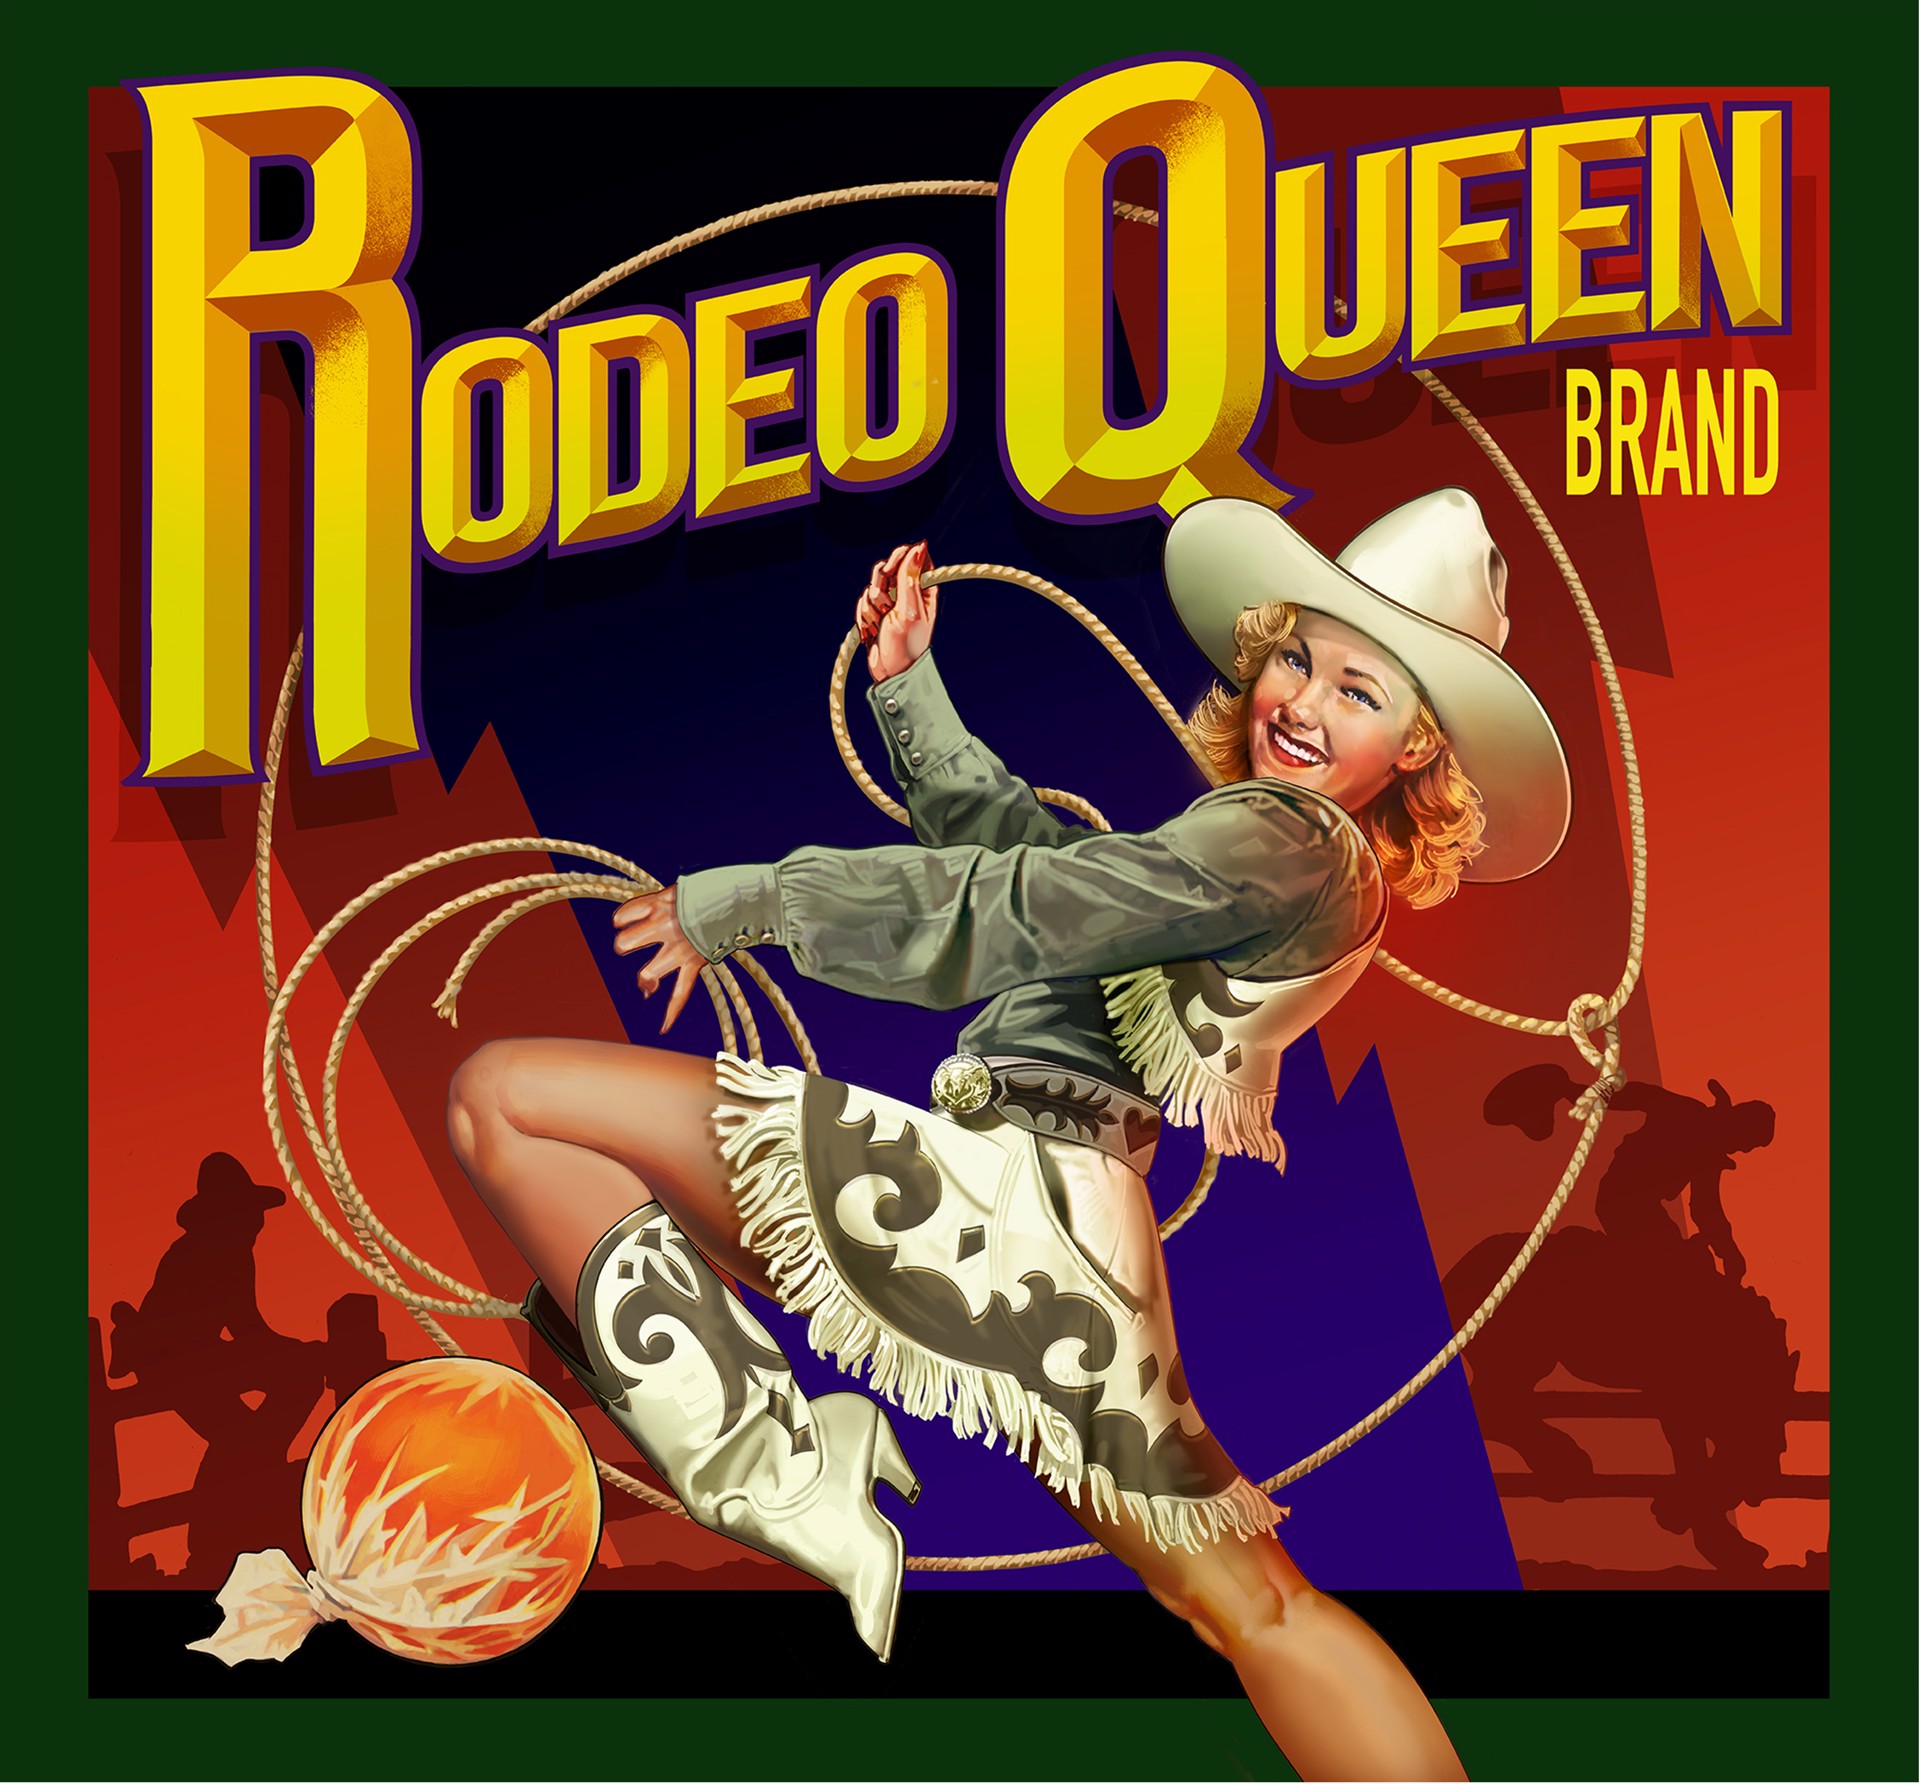 Rodeo Queen by Robert Rodriguez